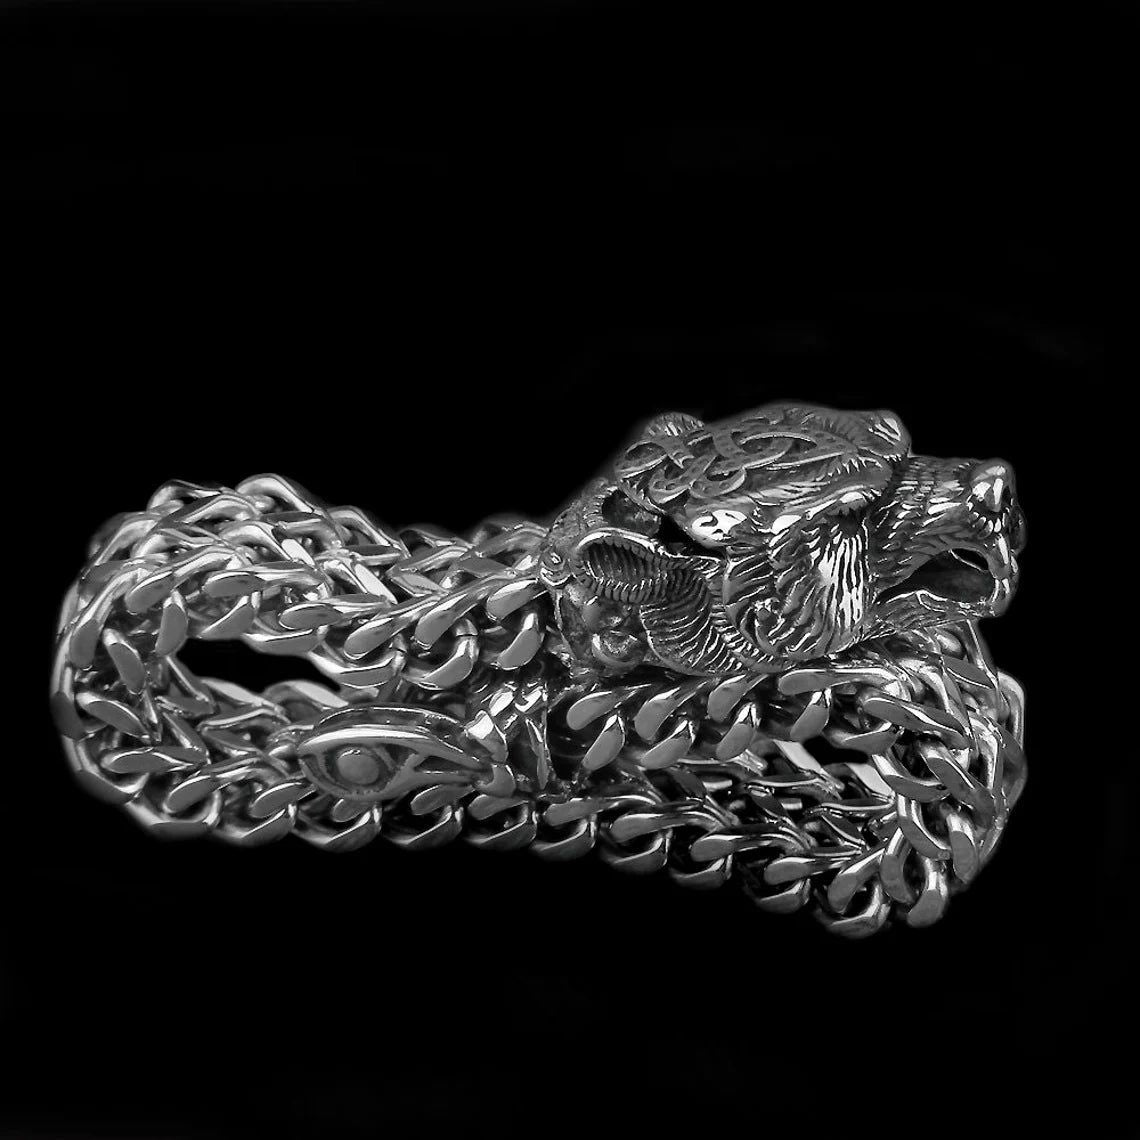 Bear Jewelry Berserker Bear Bracelet - Bijoux Viking nordiques en acier